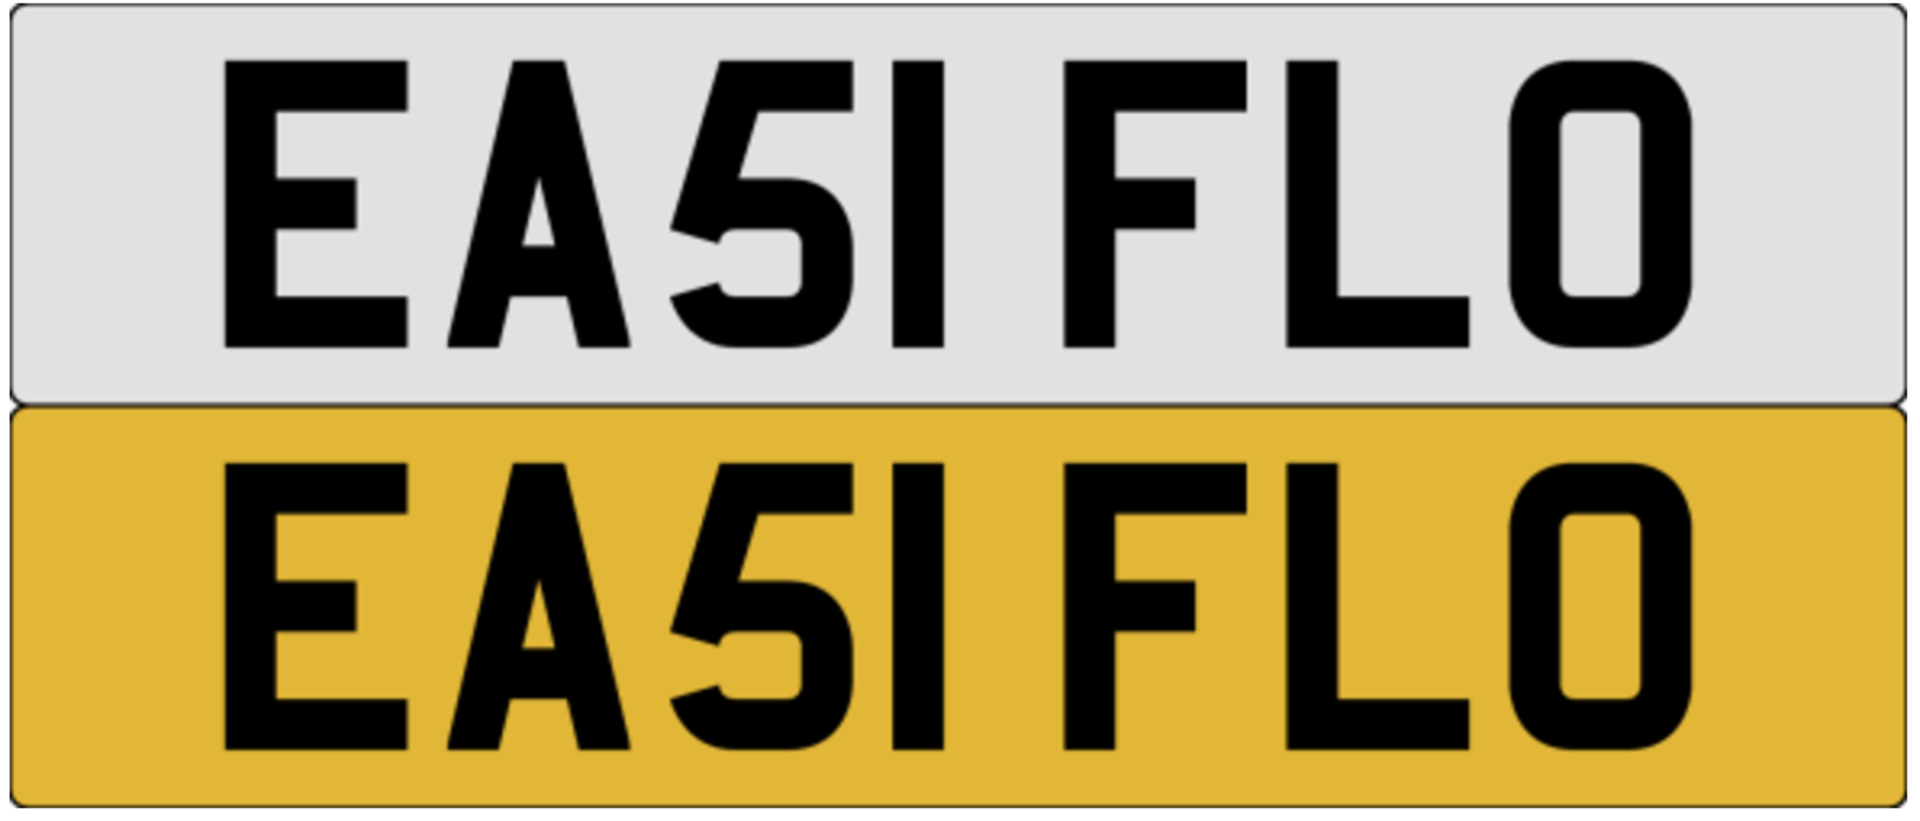 EA51 FLO (Easiflo)